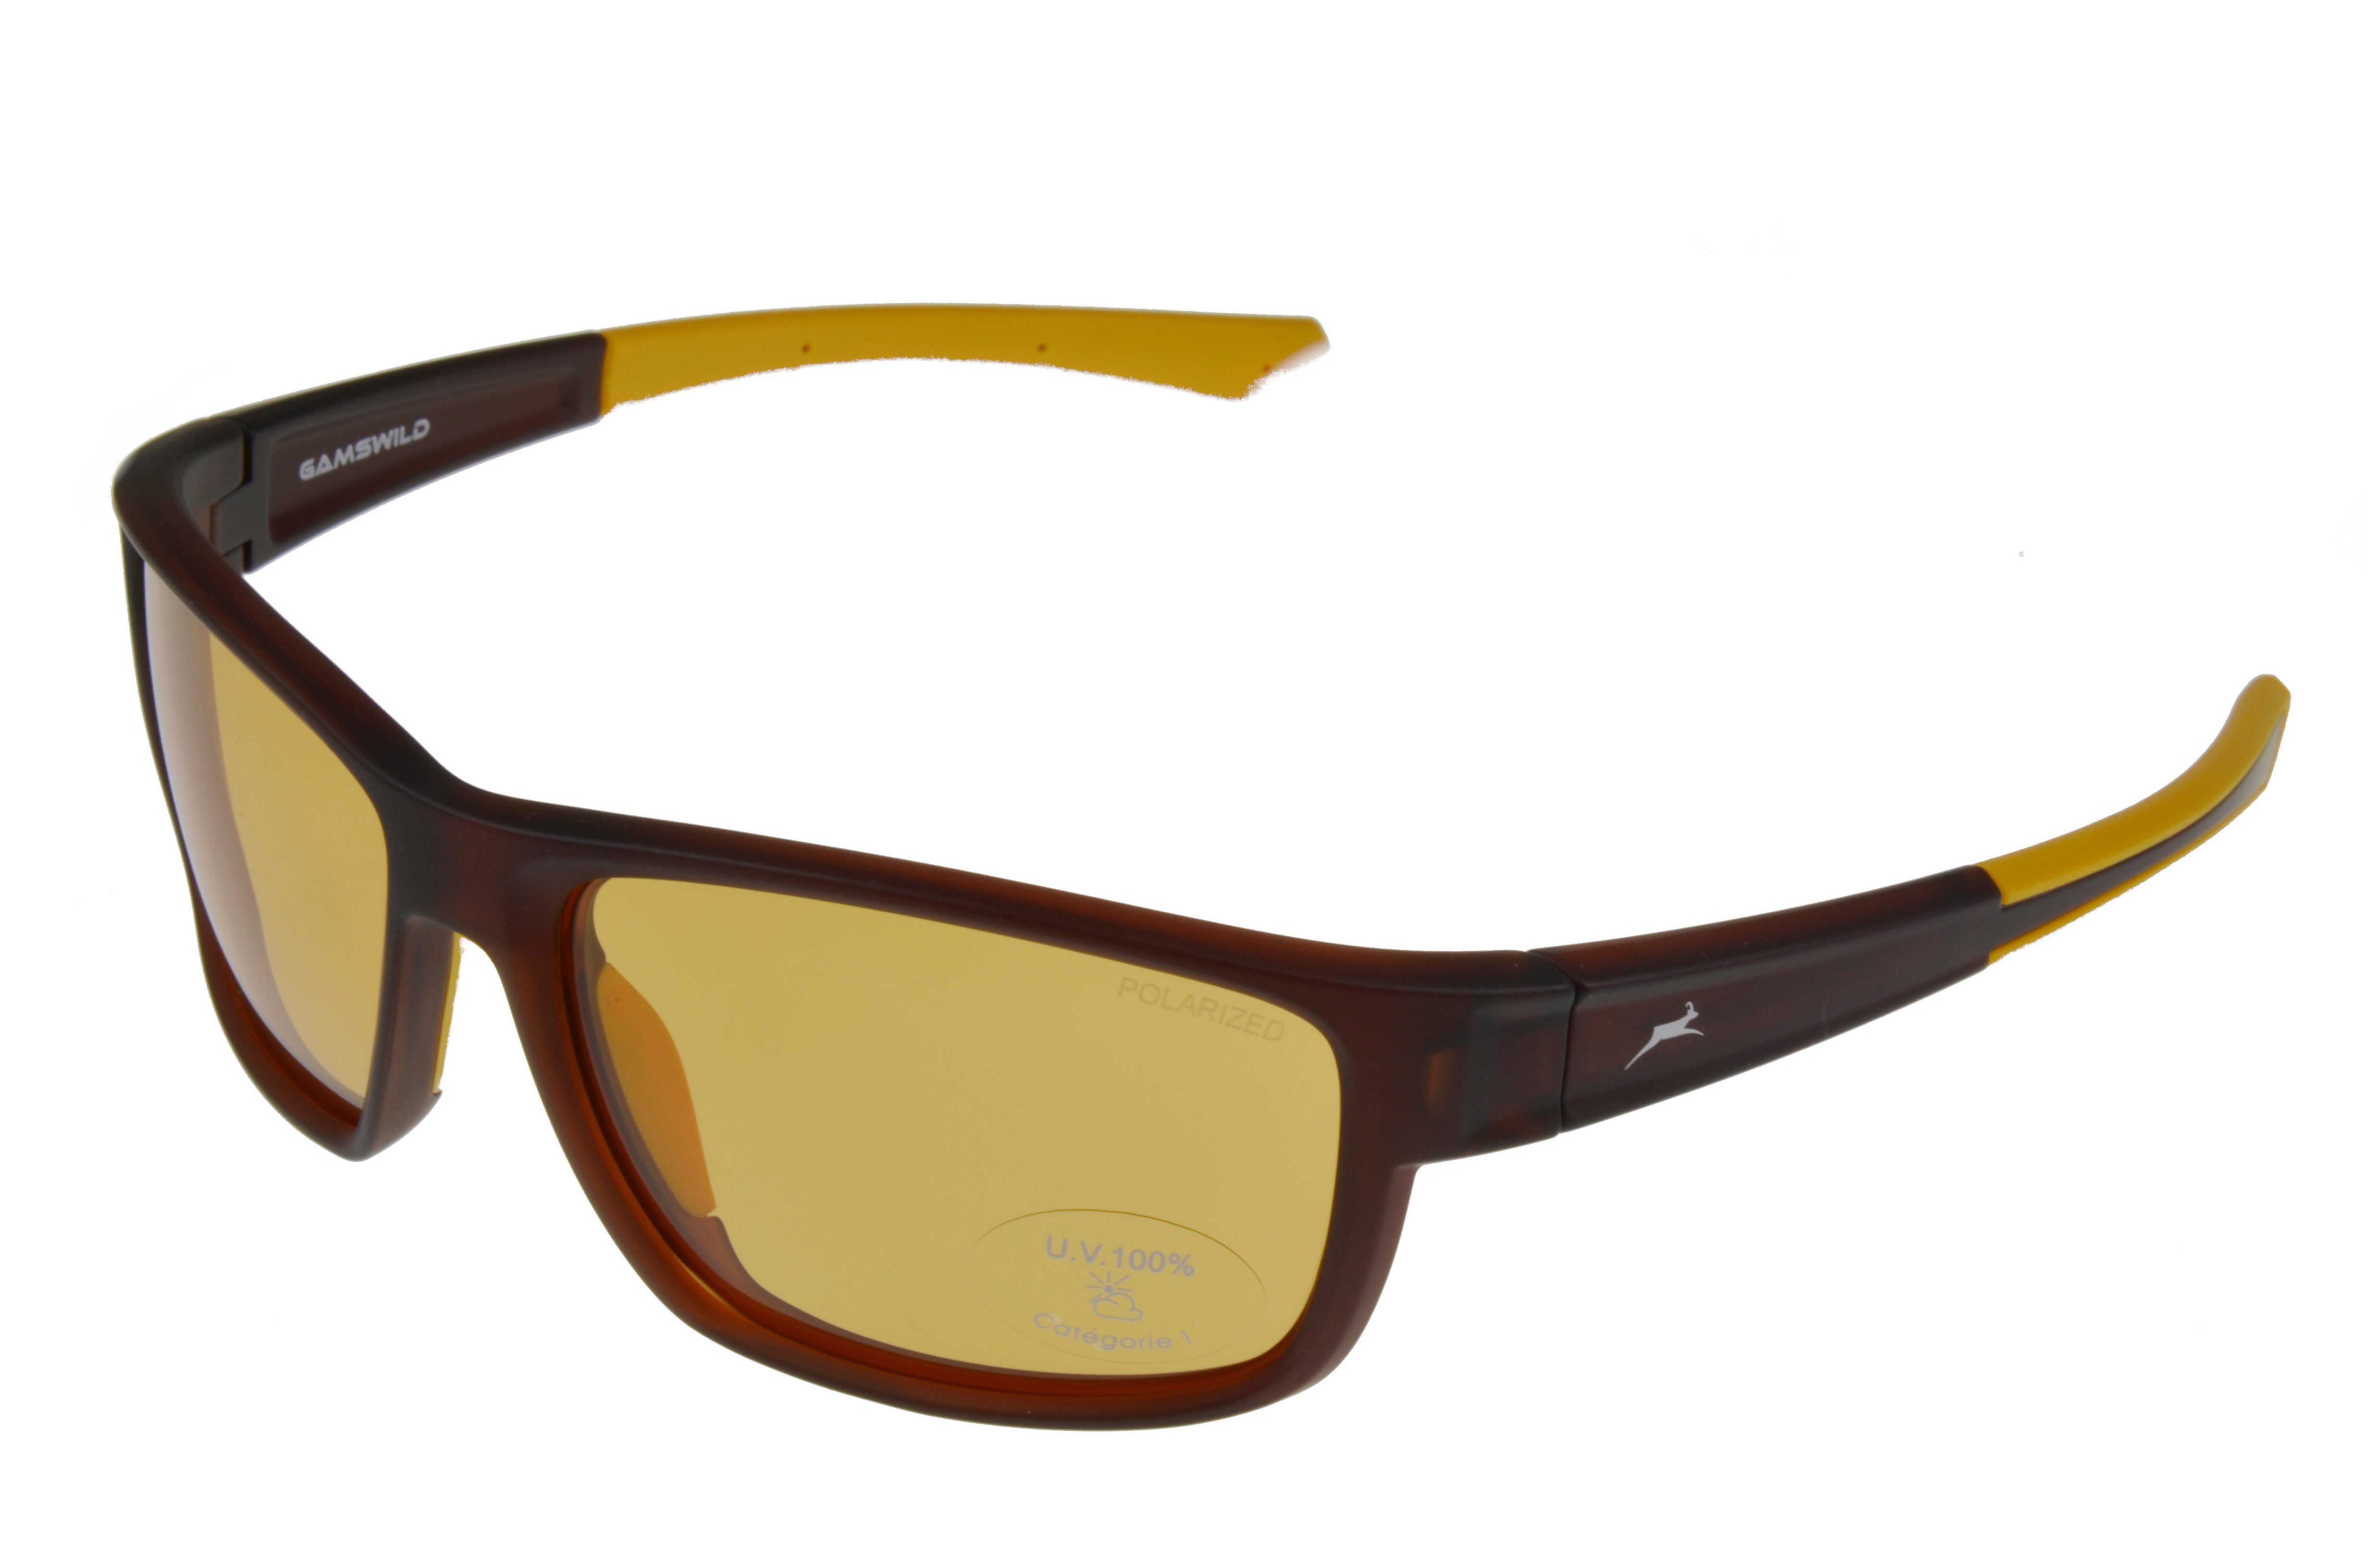 Gamswild Sportbrille WS7434 Sonnenbrille Skibrille Fahrradbrille Damen Herren Unisex, schmal geschnittenes Modell, braun, schwarz, pink, grün braun-gelb